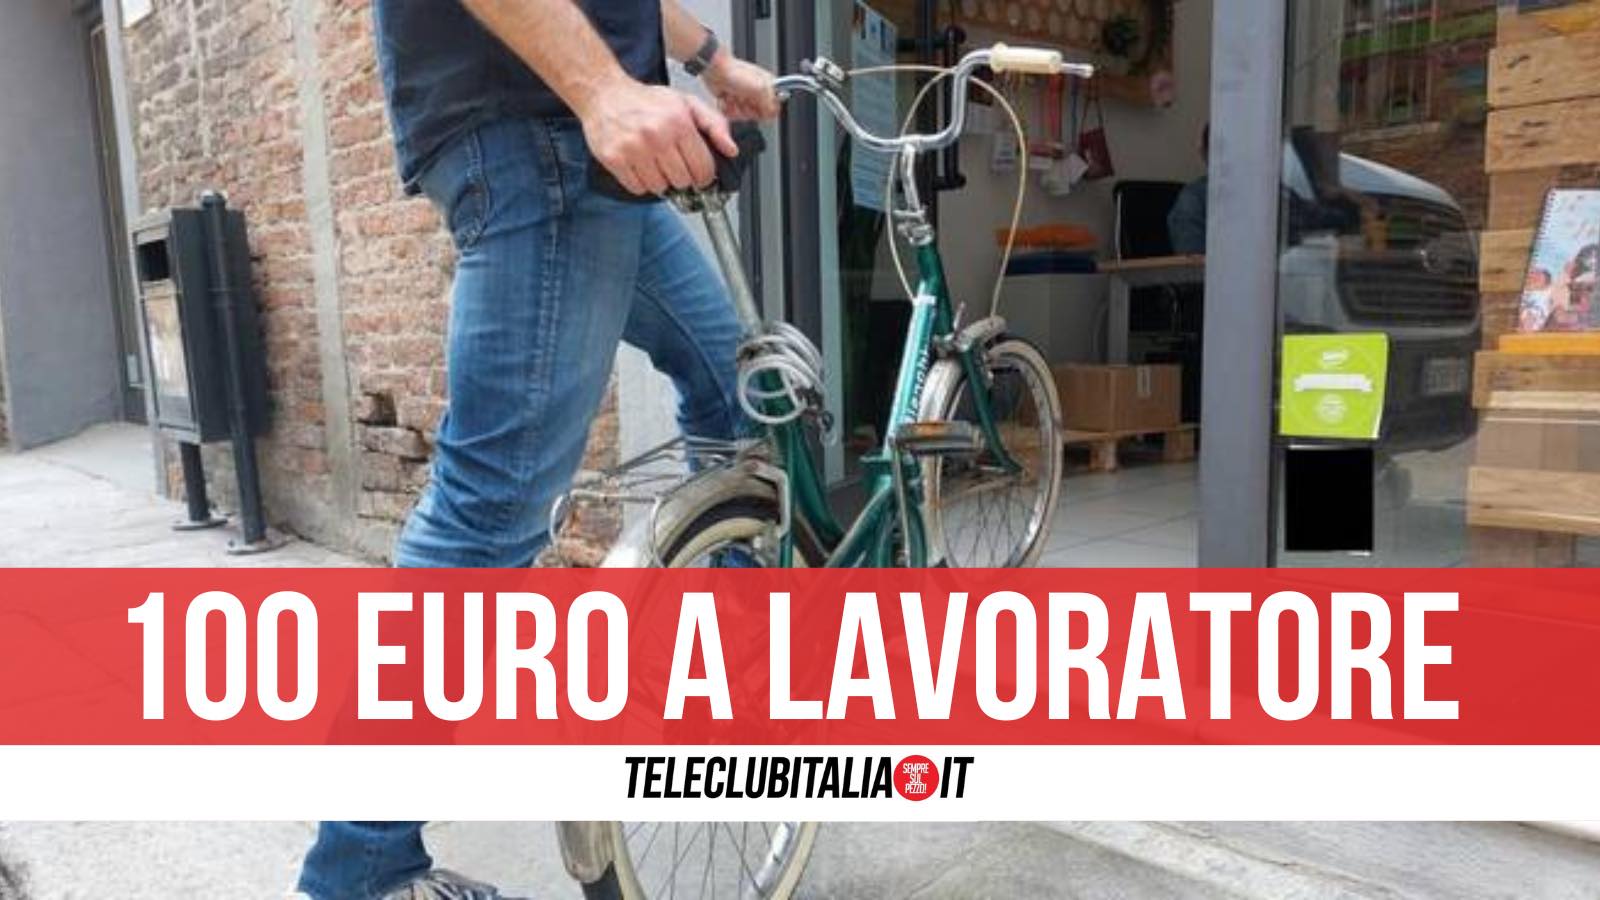 lavoratore 100 euro bonus bici caserta